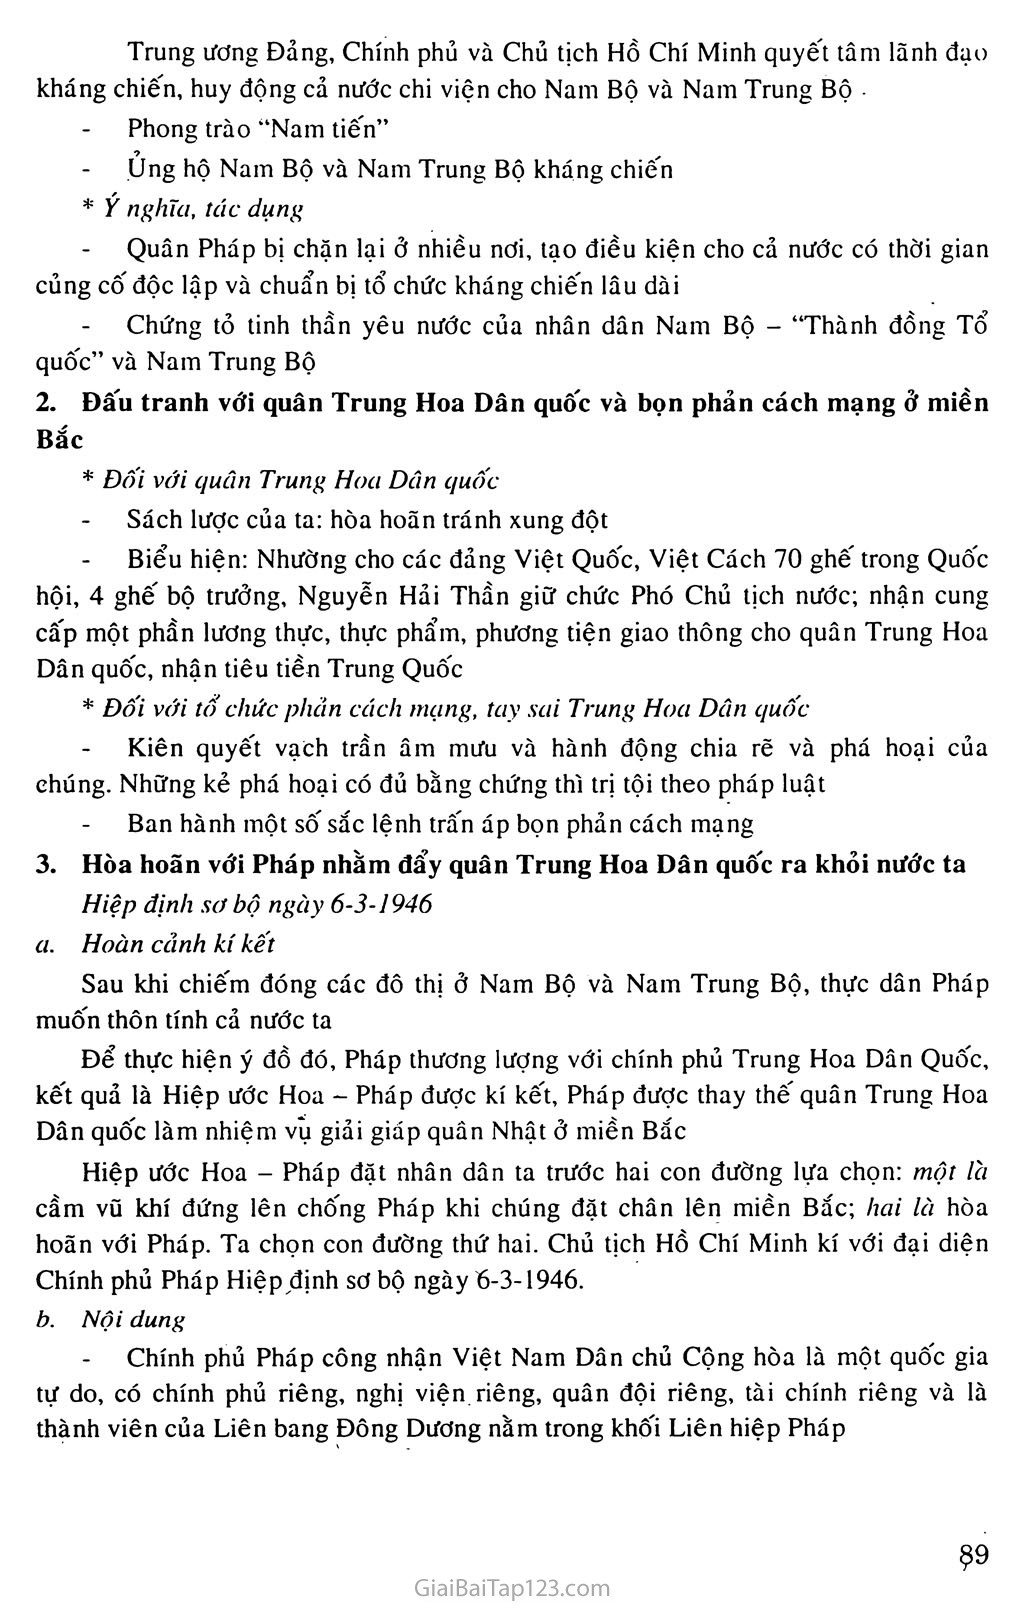 Bài 17: Nước Việt Nam Dân chủ Cộng hòa từ sau ngày  2 - 9 - 1945 đến trước ngày 19 - 2 -1946 trang 3